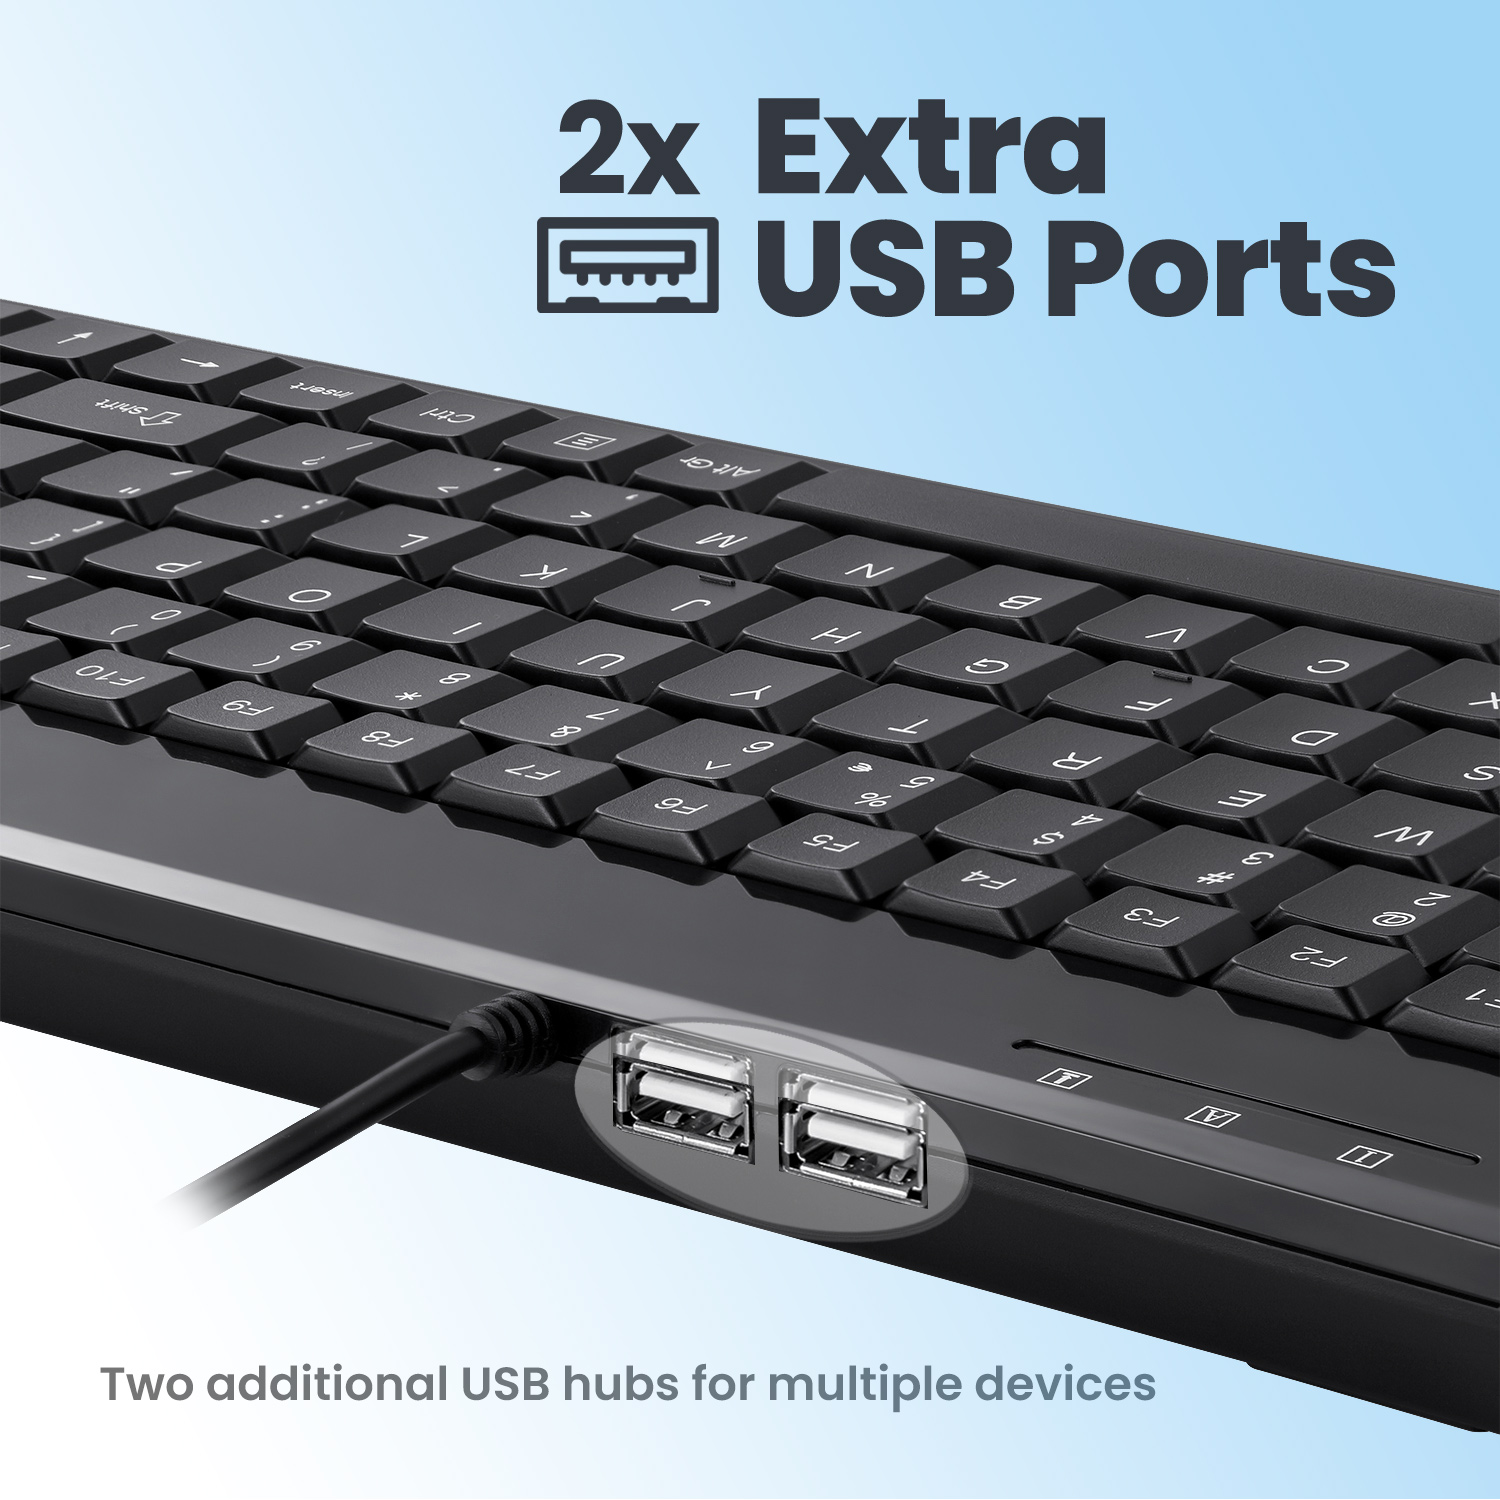 2 EXTRA USB PORTS